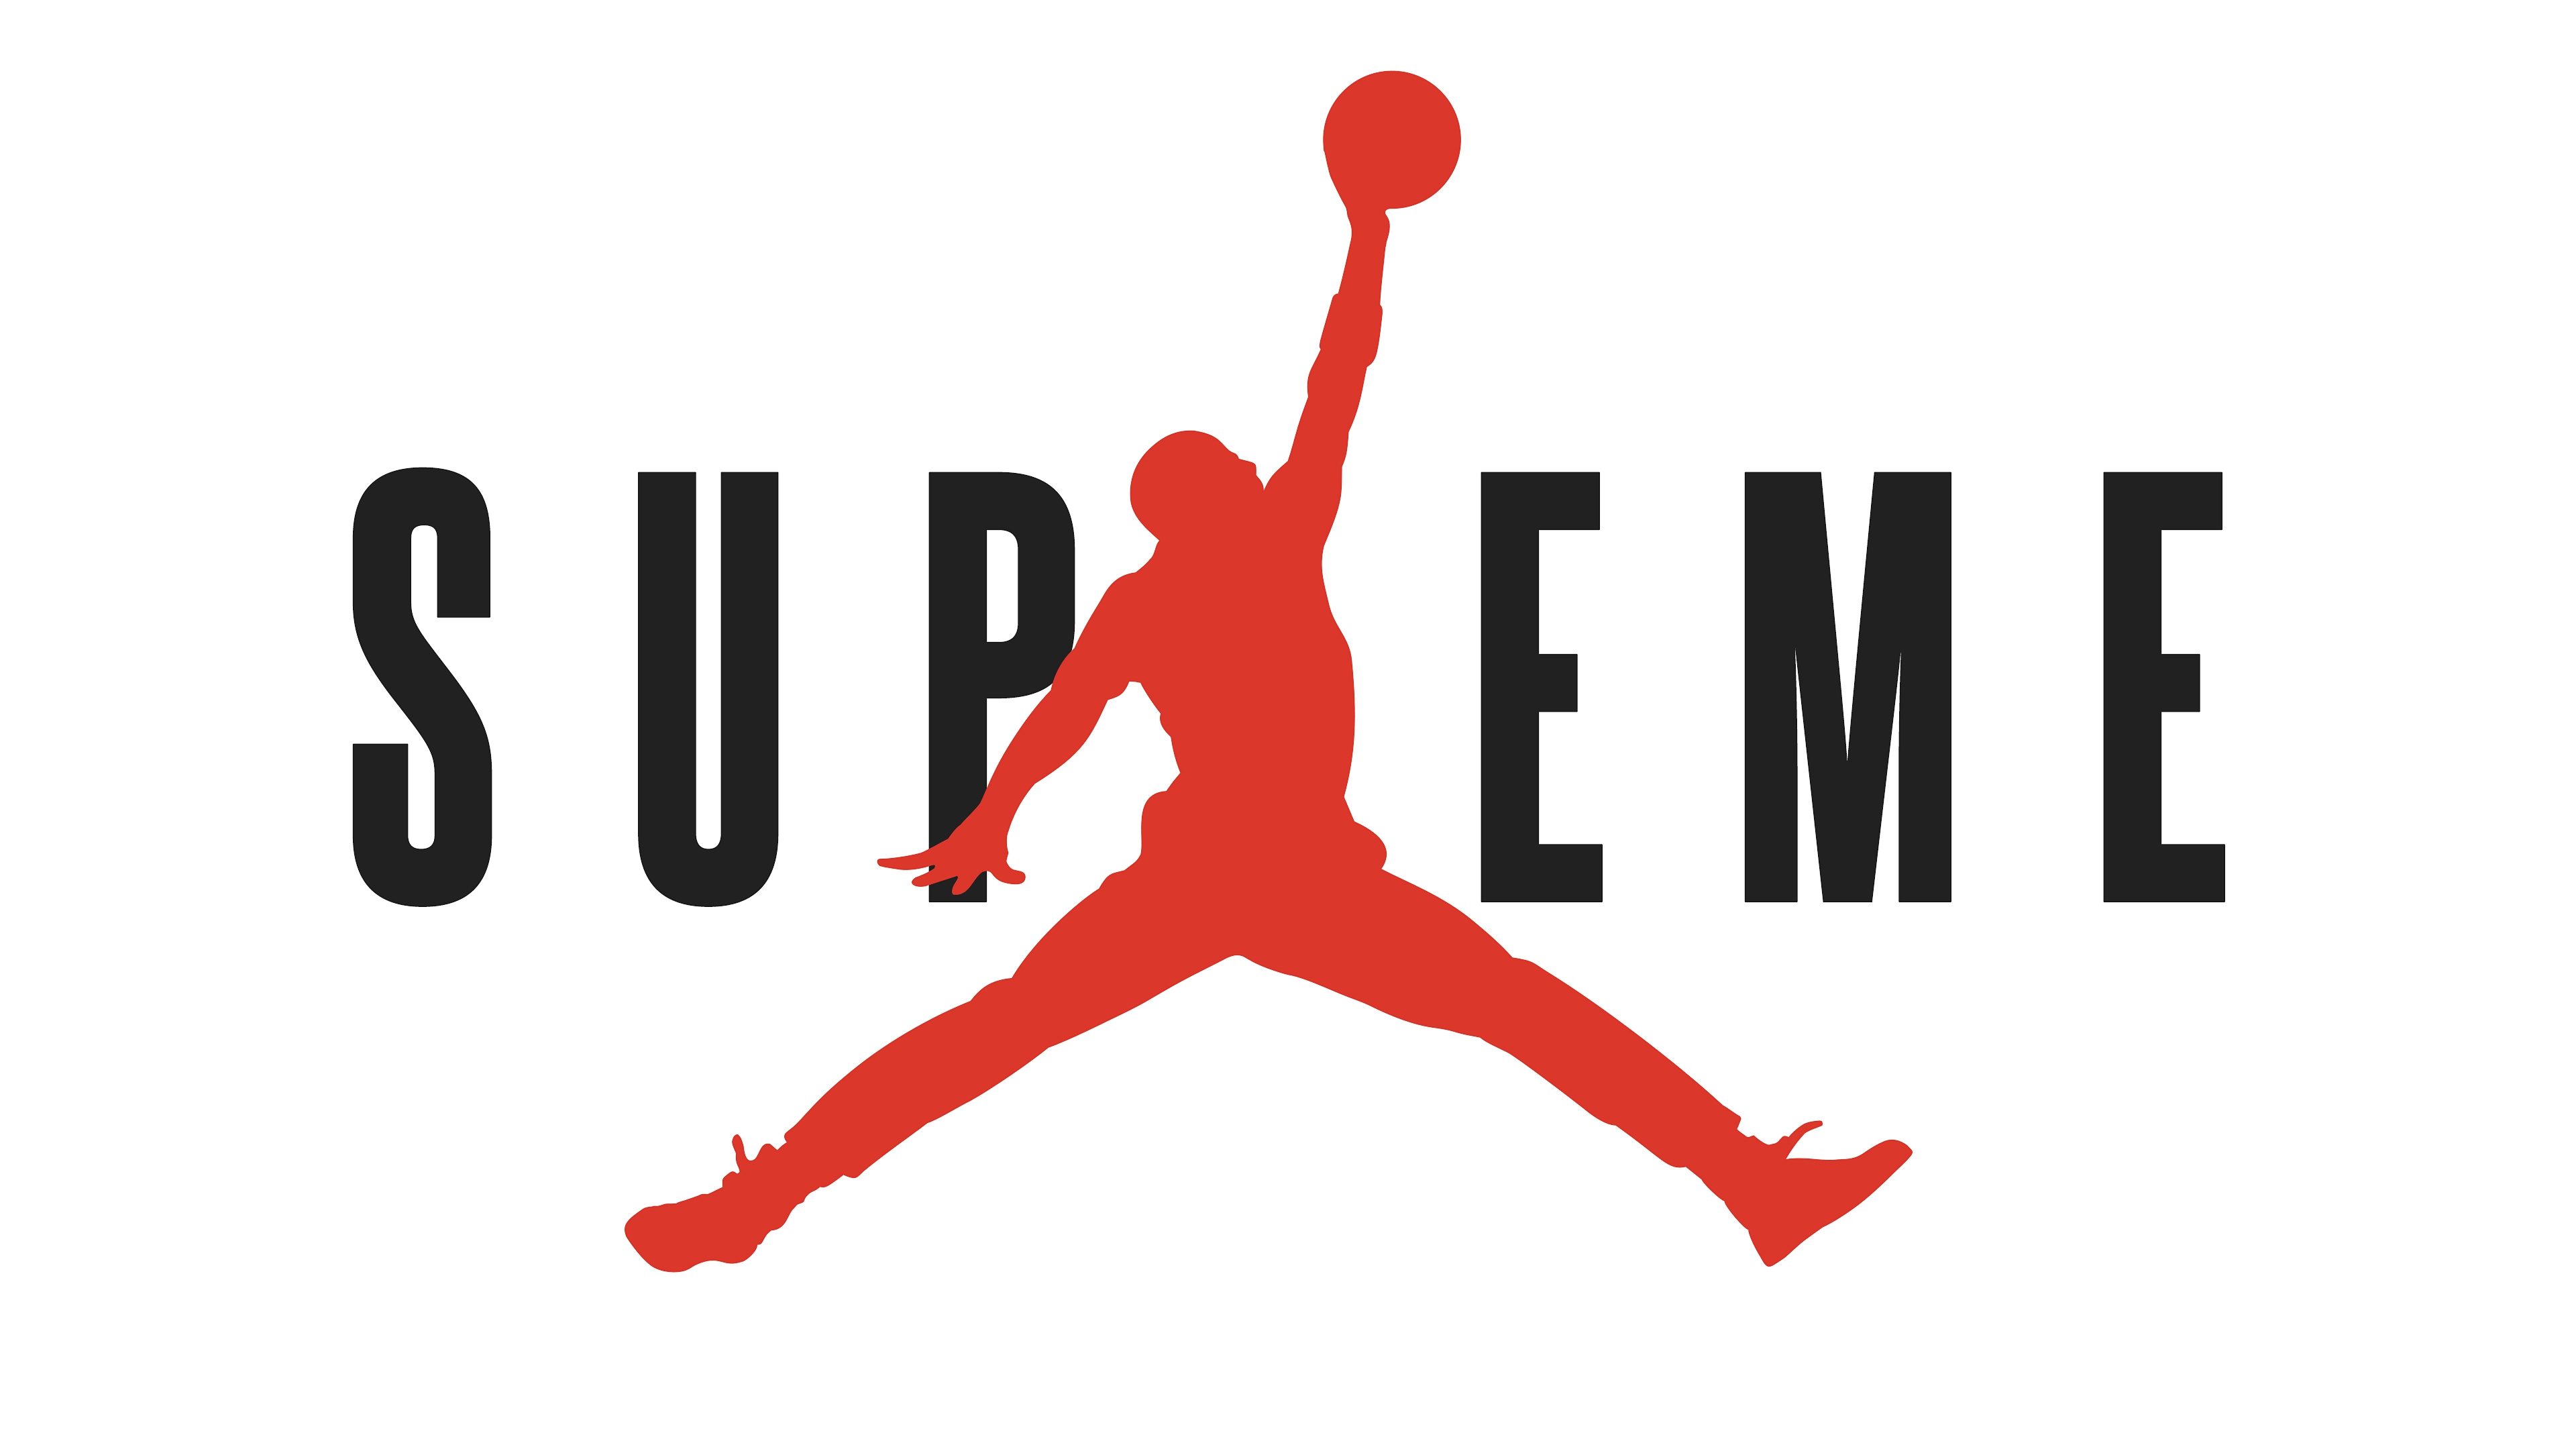 Air Jordan Logo Wallpapers Free Download | HD Wallpapers ...